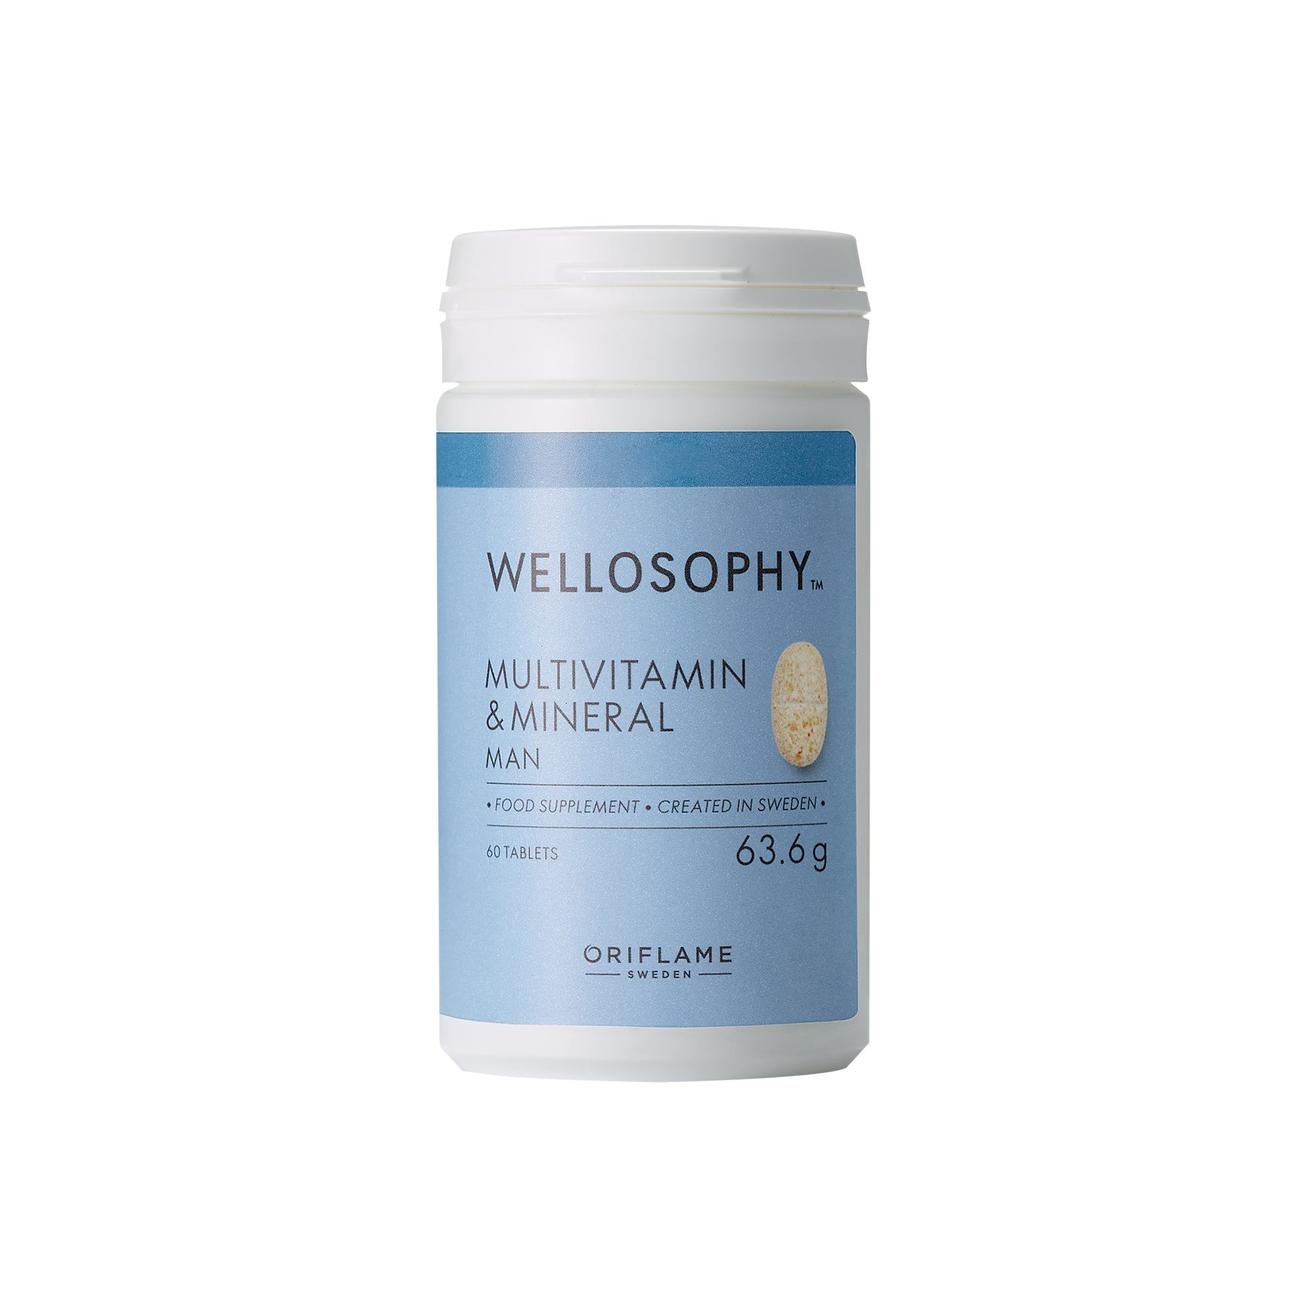 Wellosophy Multivitamin & Mineral miehille tuote hintaan 27,9€ liikkeestä Oriflame